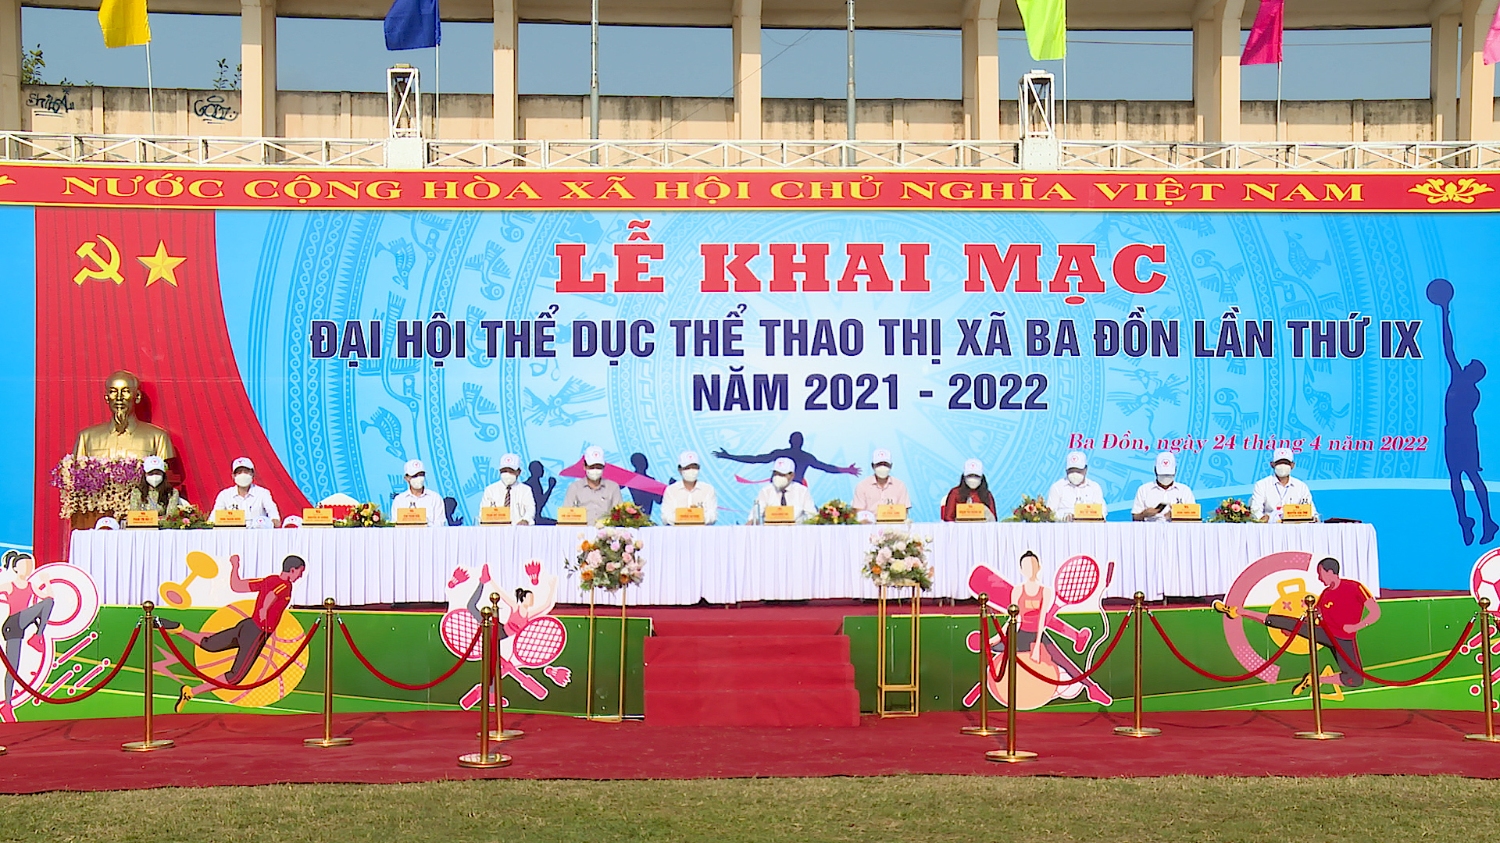 Đoàn Chủ tịch chào mừng Đại hội TDTT thị xã Ba Đồn lần thứ 9 năm 2022